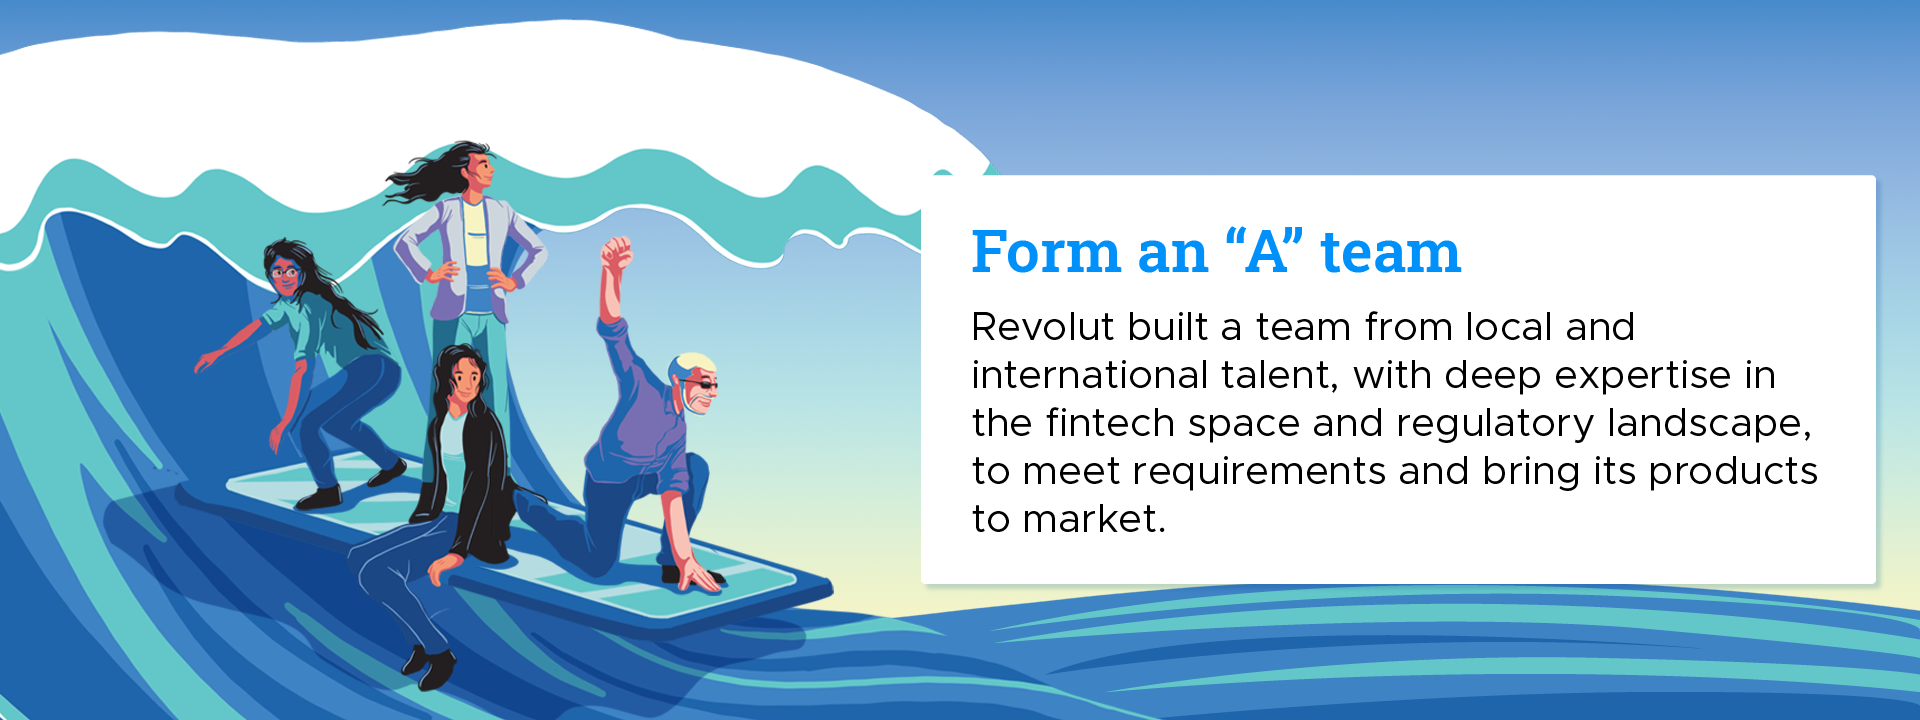 Form an “A” team